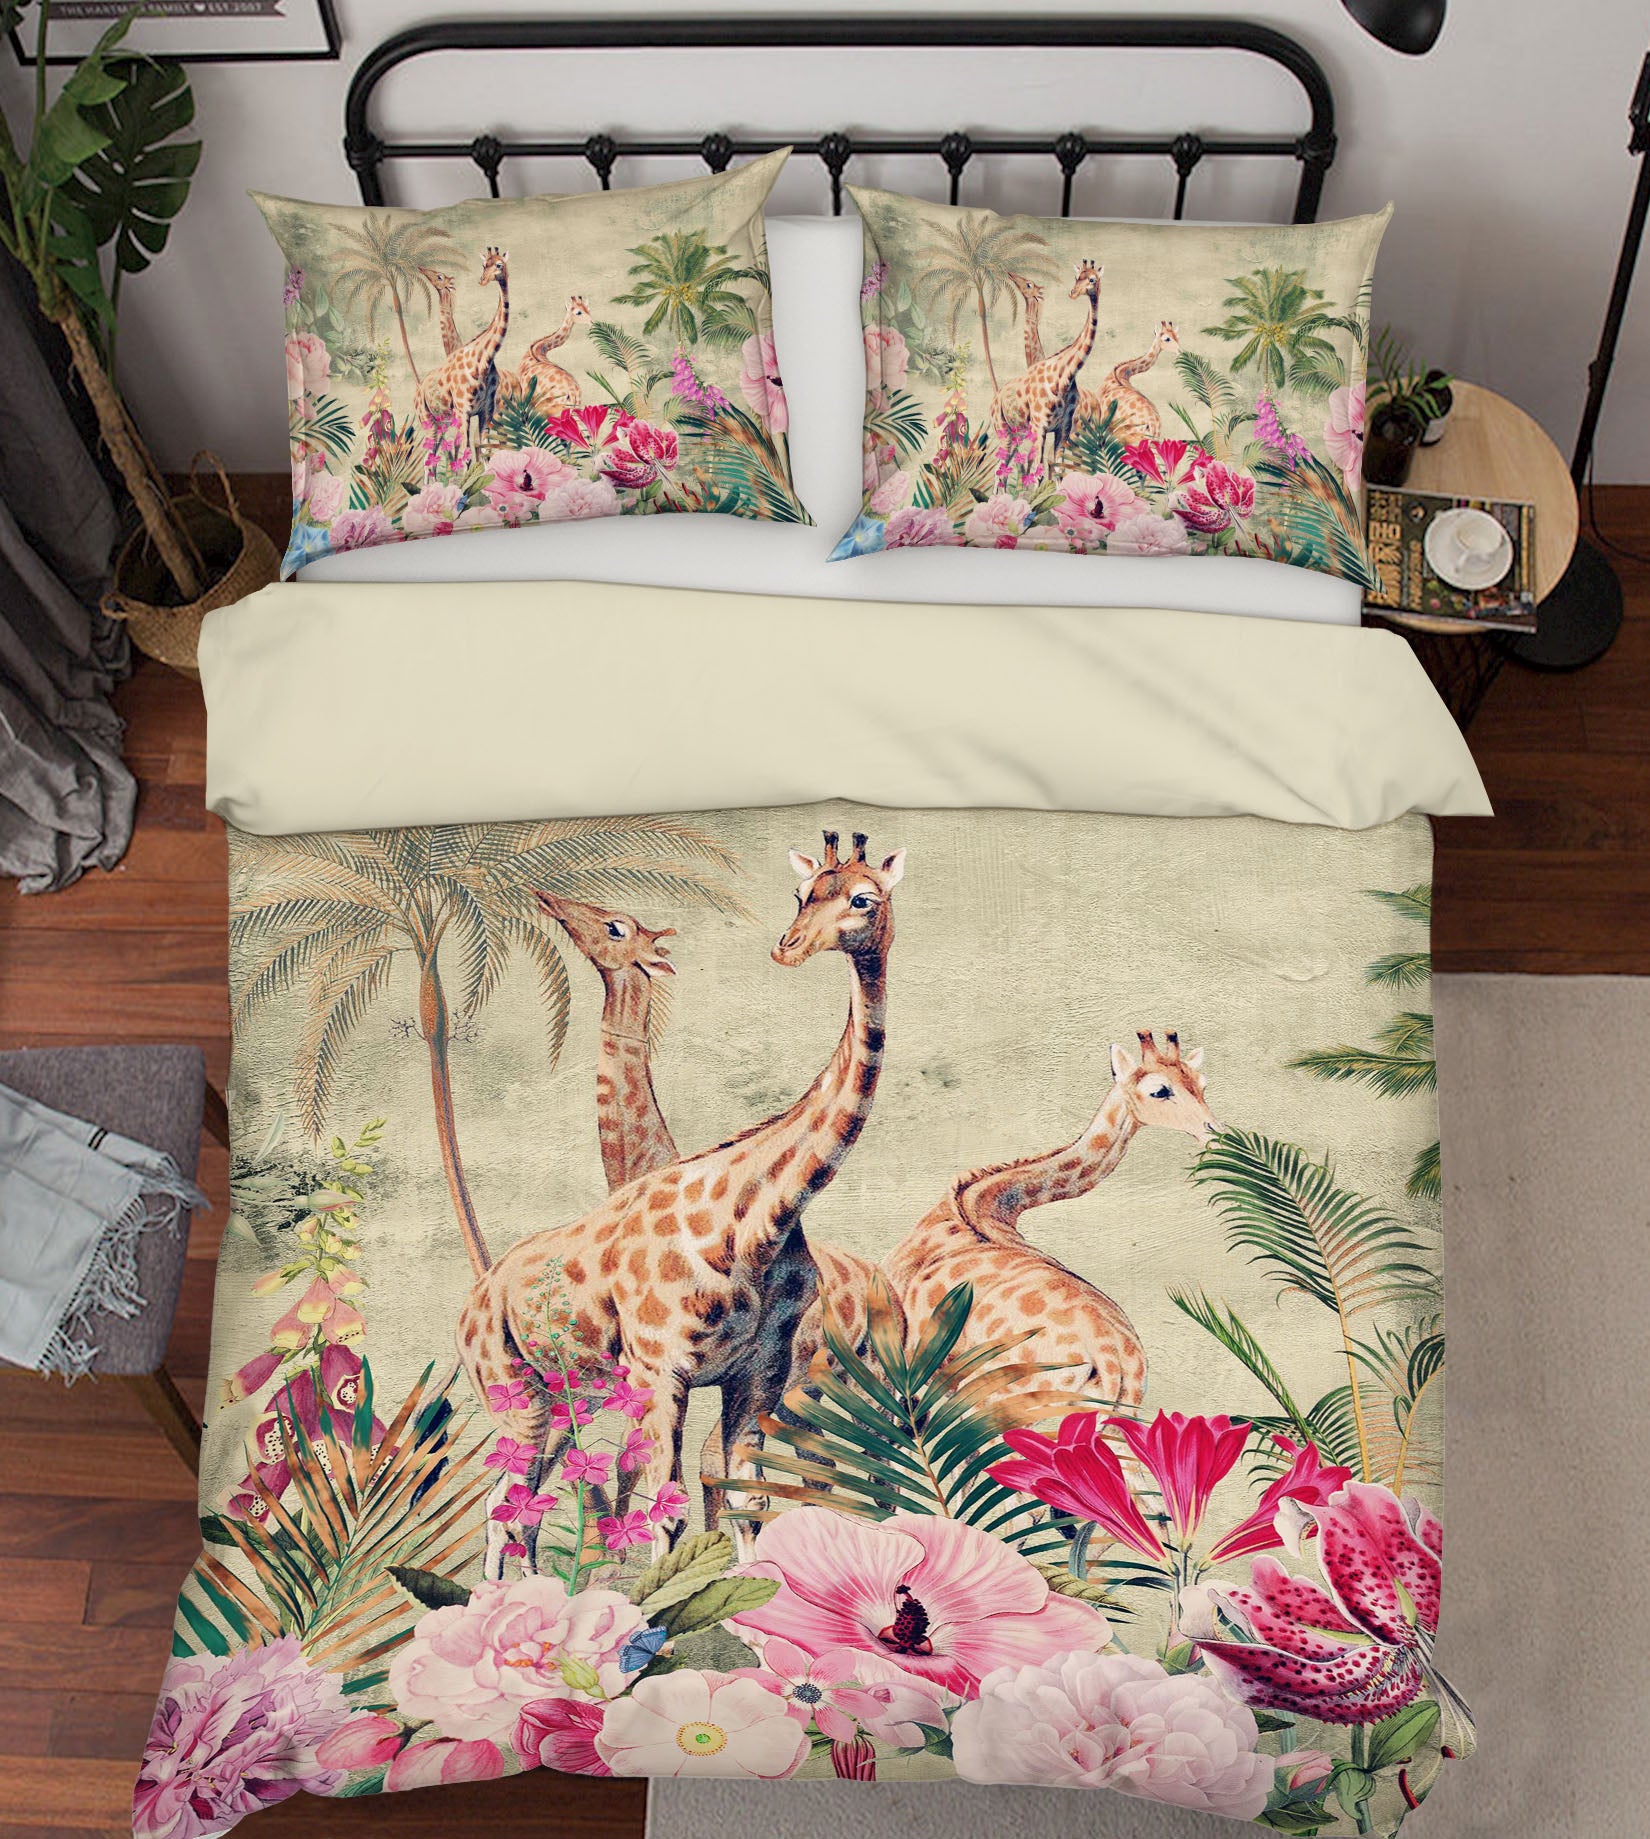 3D Giraffe Flower 037 Uta Naumann Bedding Bed Pillowcases Quilt